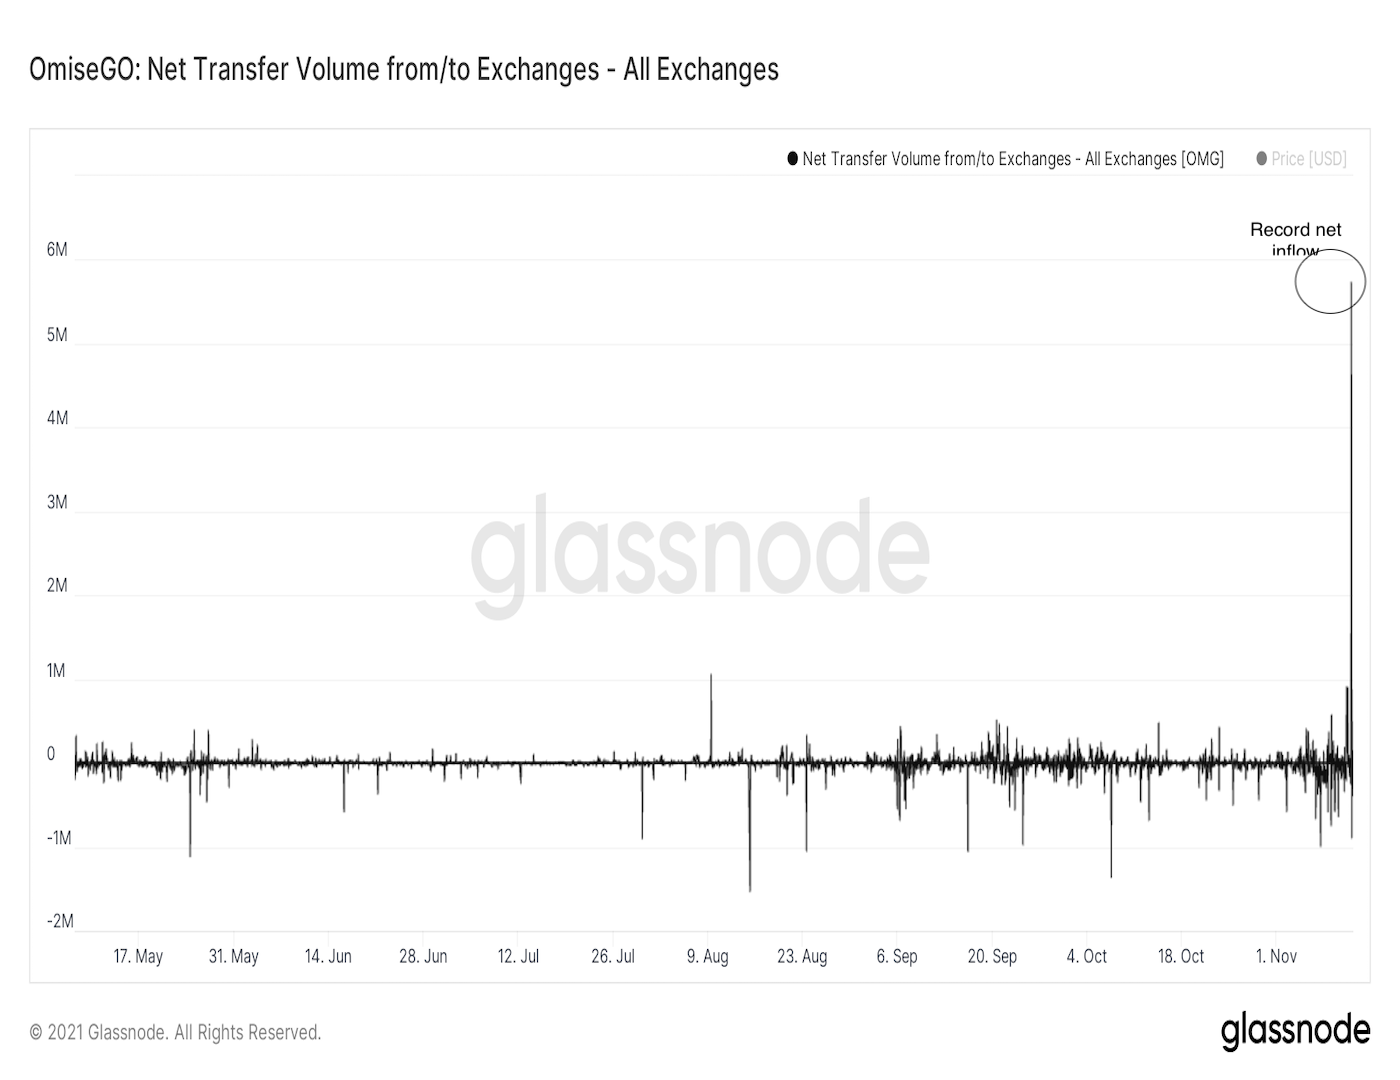 OMG: Net exchange inflows (Glassnode)